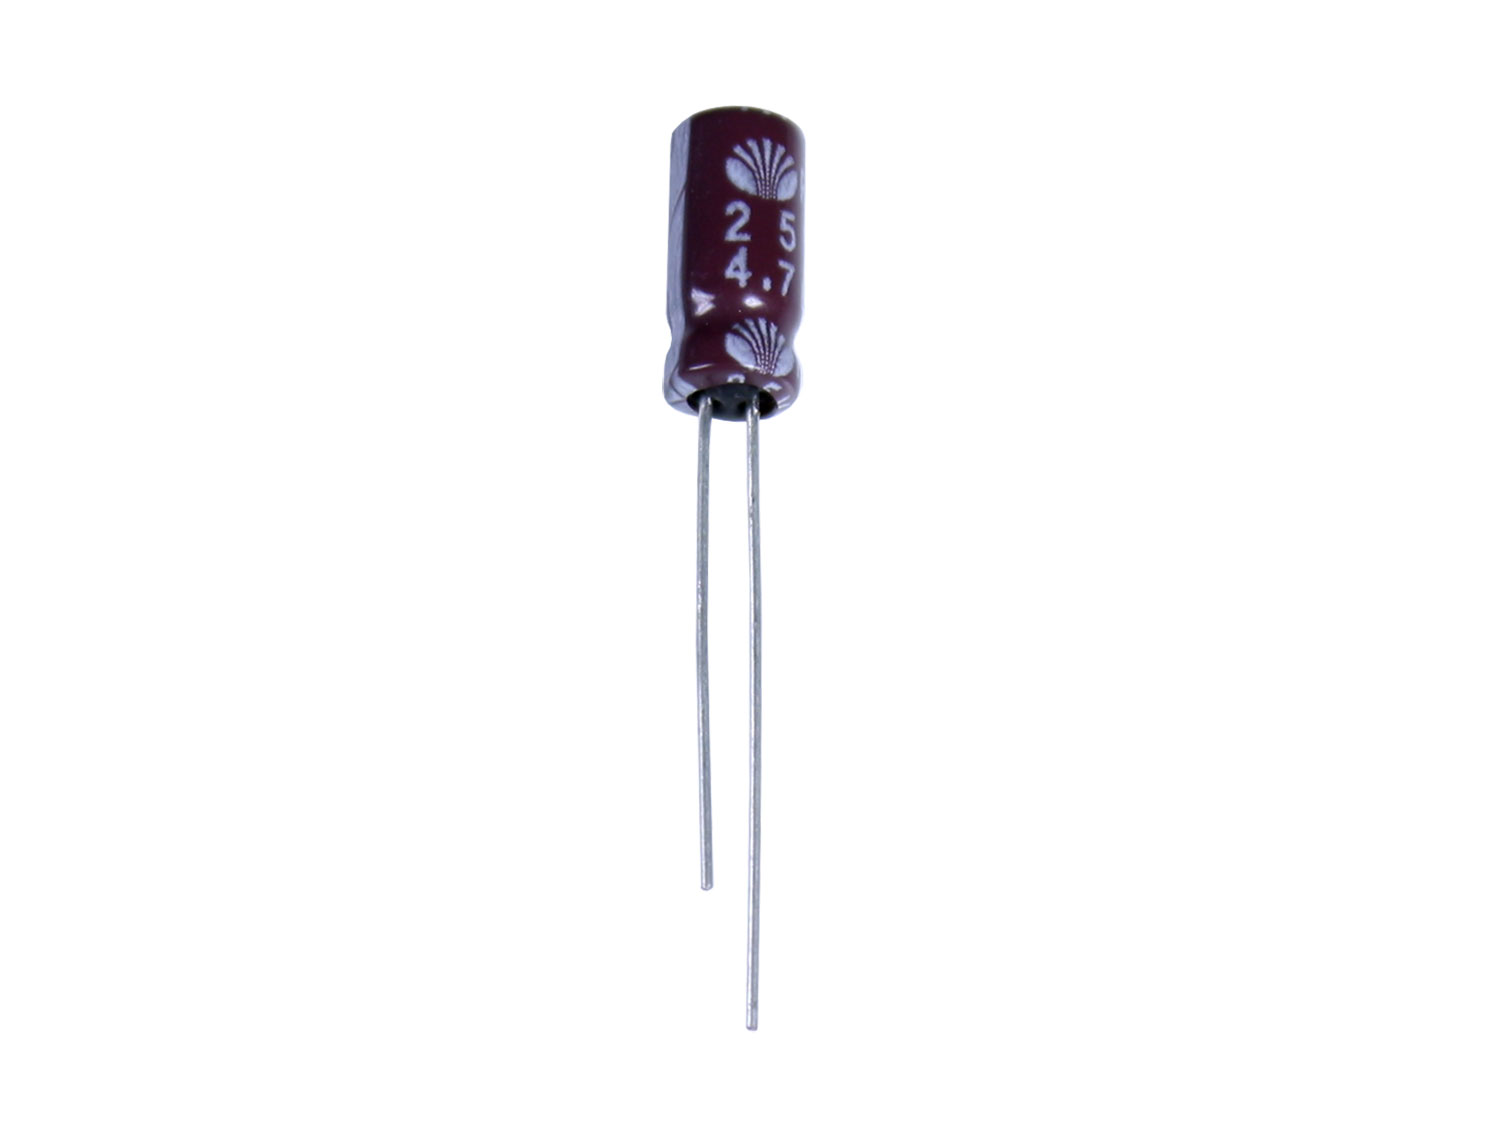 Panasonic - Condensador Electrolítico Radial 4,7 µF - 25 V - 85°C - ECEA1EKS4R7